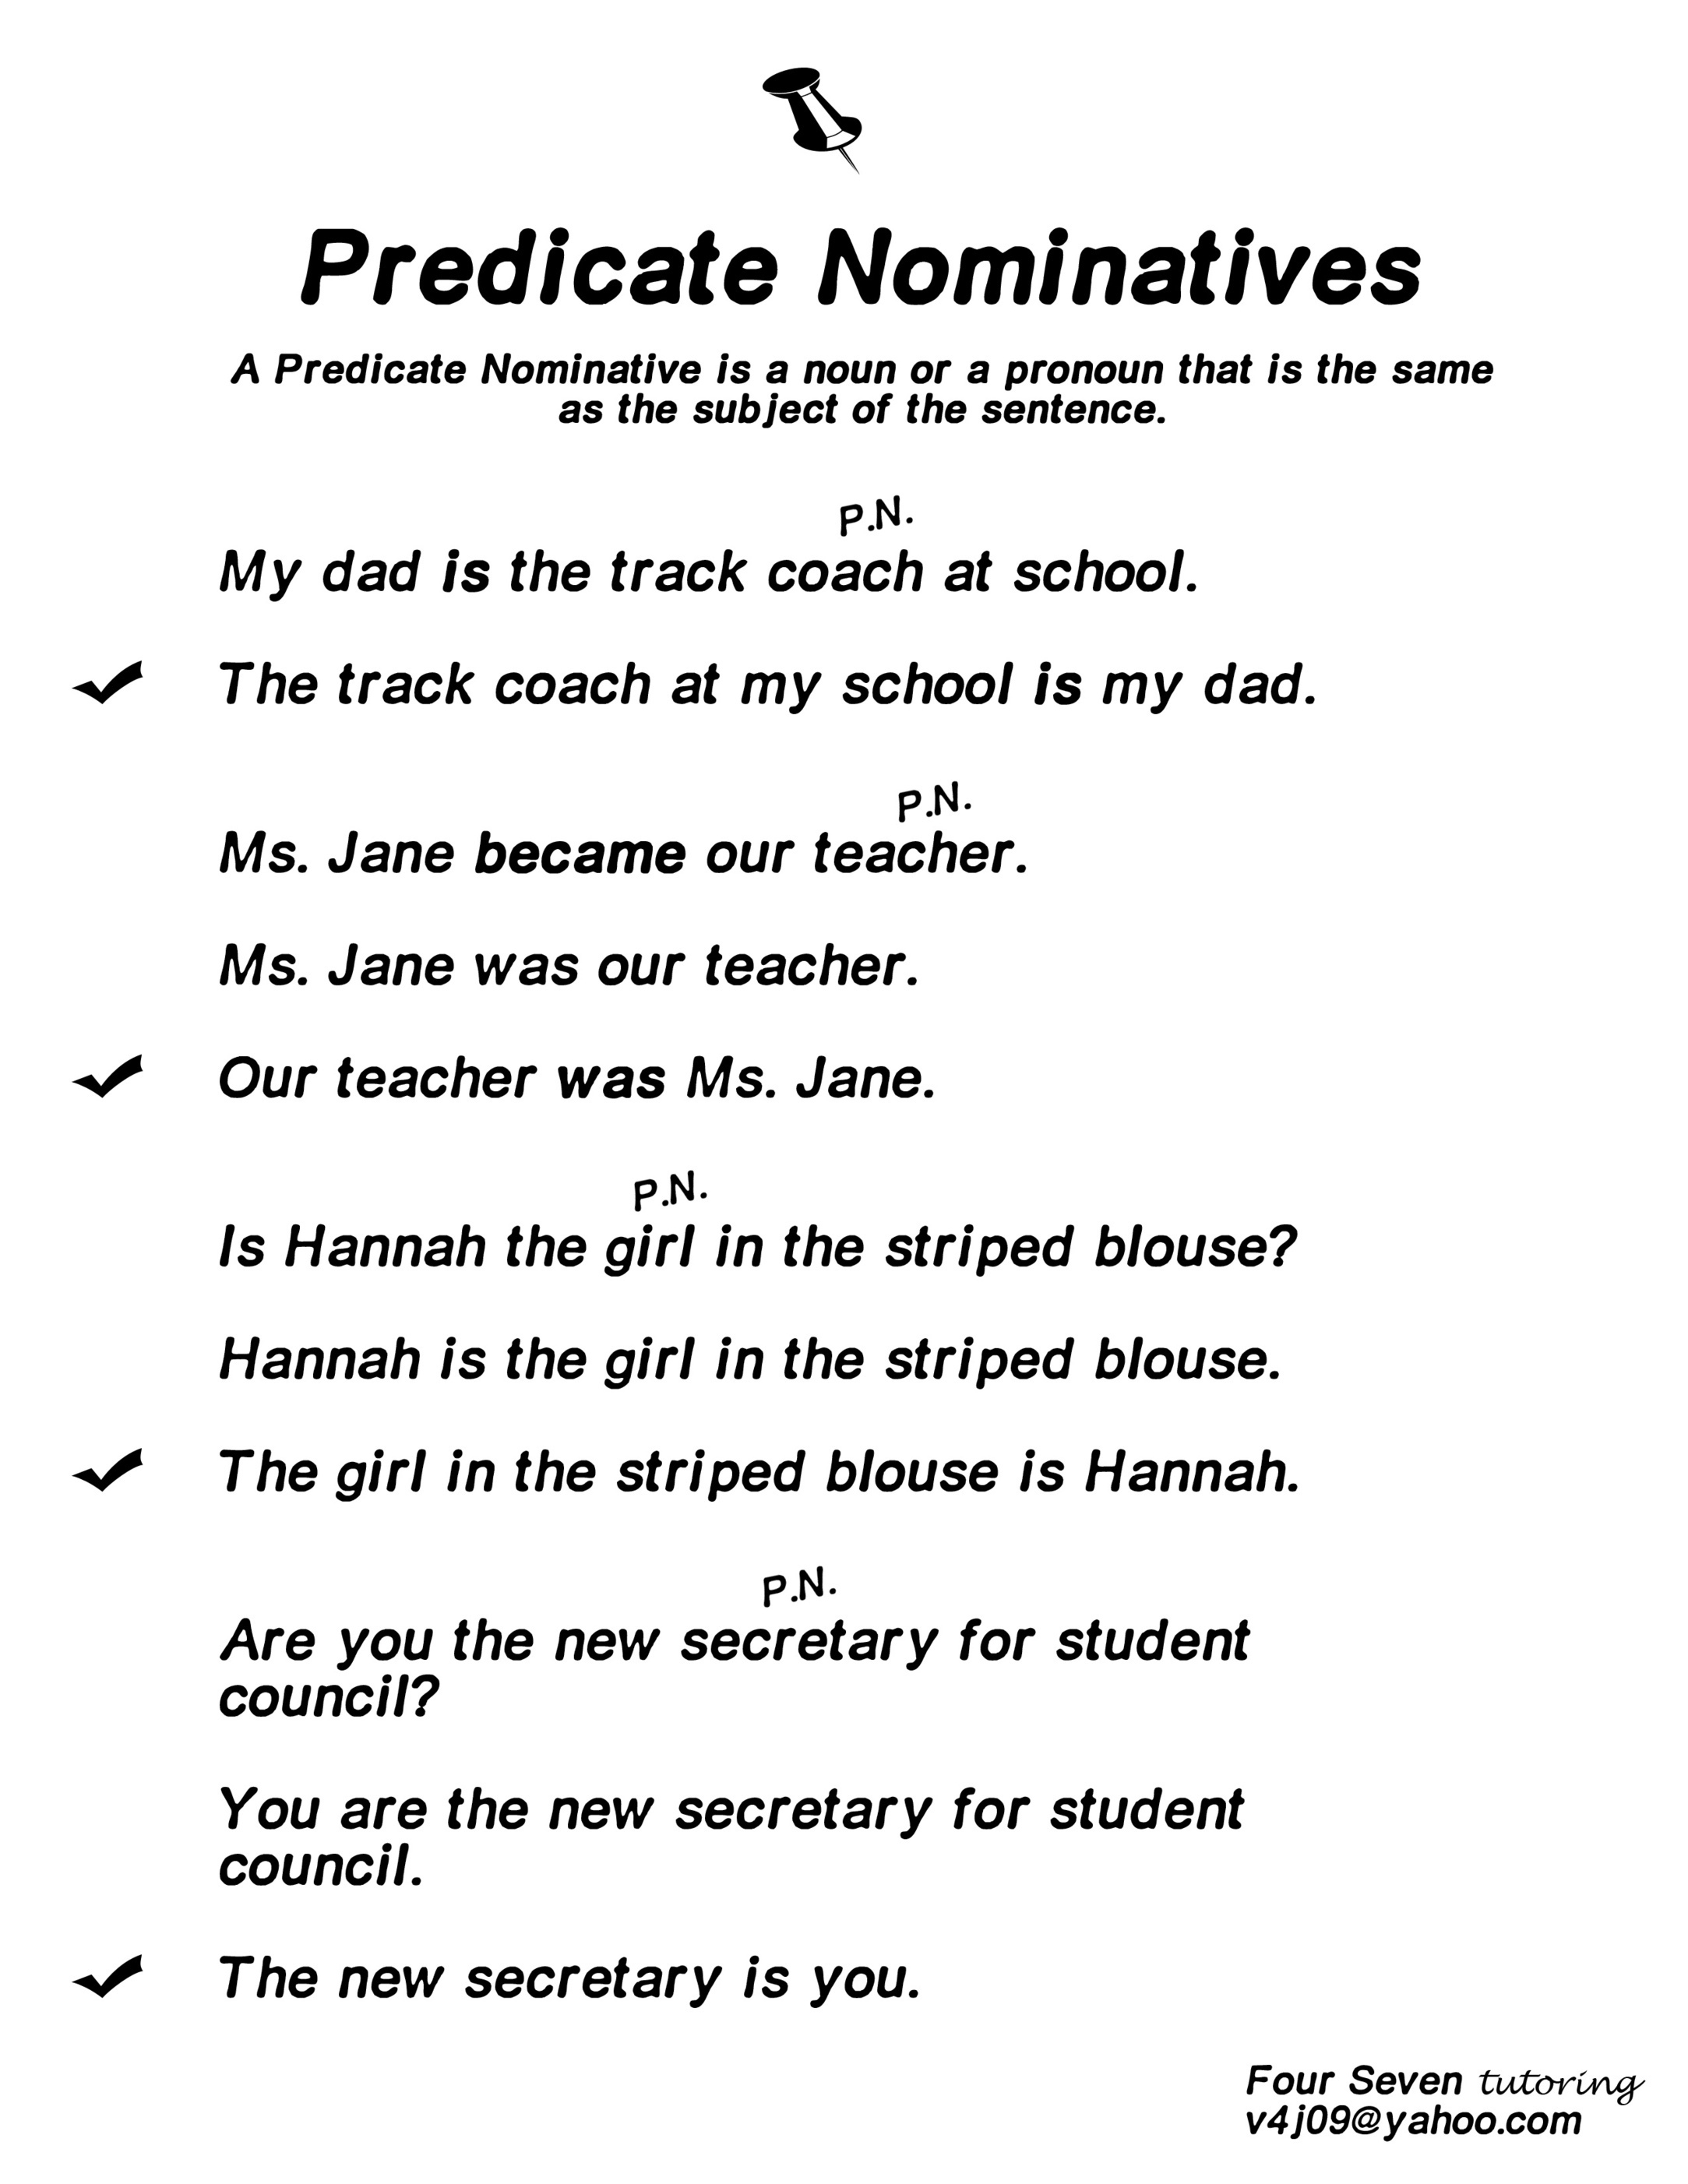 Predicate Nominative Definition Predicate Nomi 